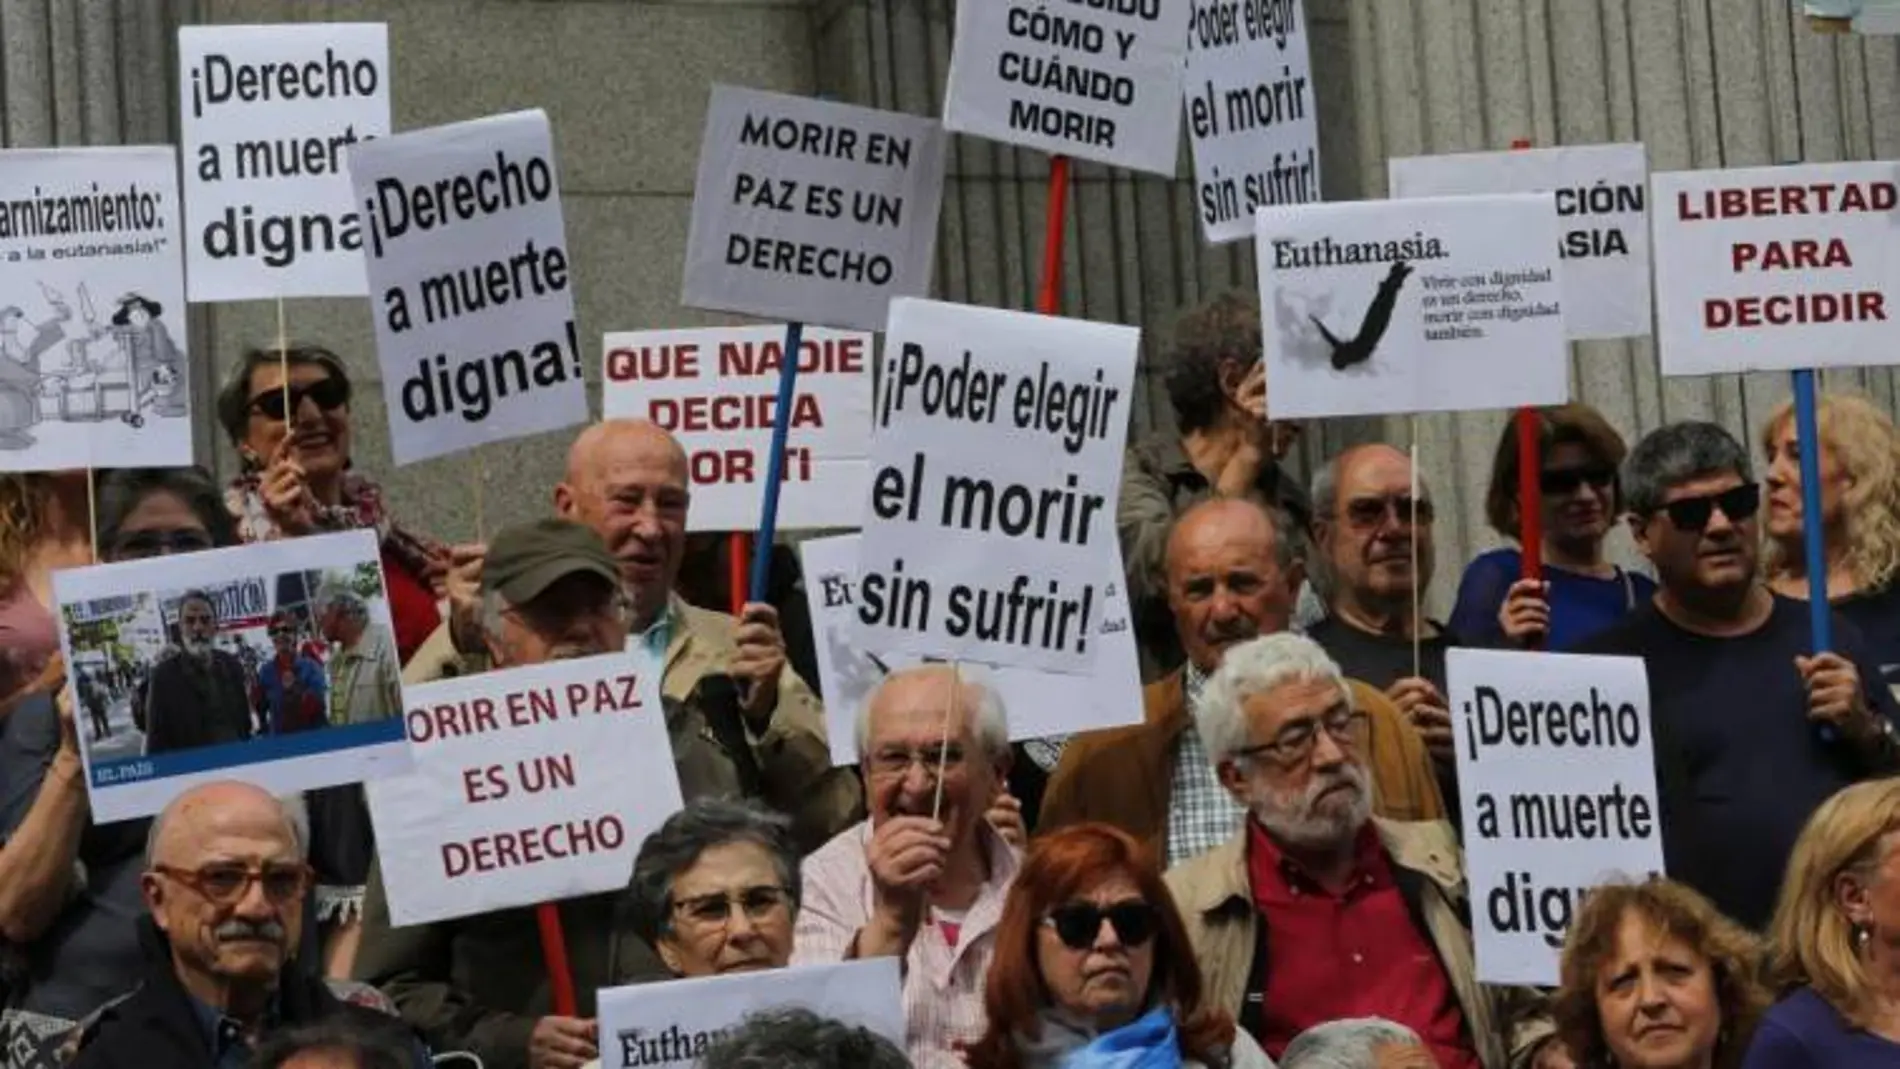 Un grupo de personas se manifiesta en favor de la despenalización de la eutanasia / Rubén Mondelo